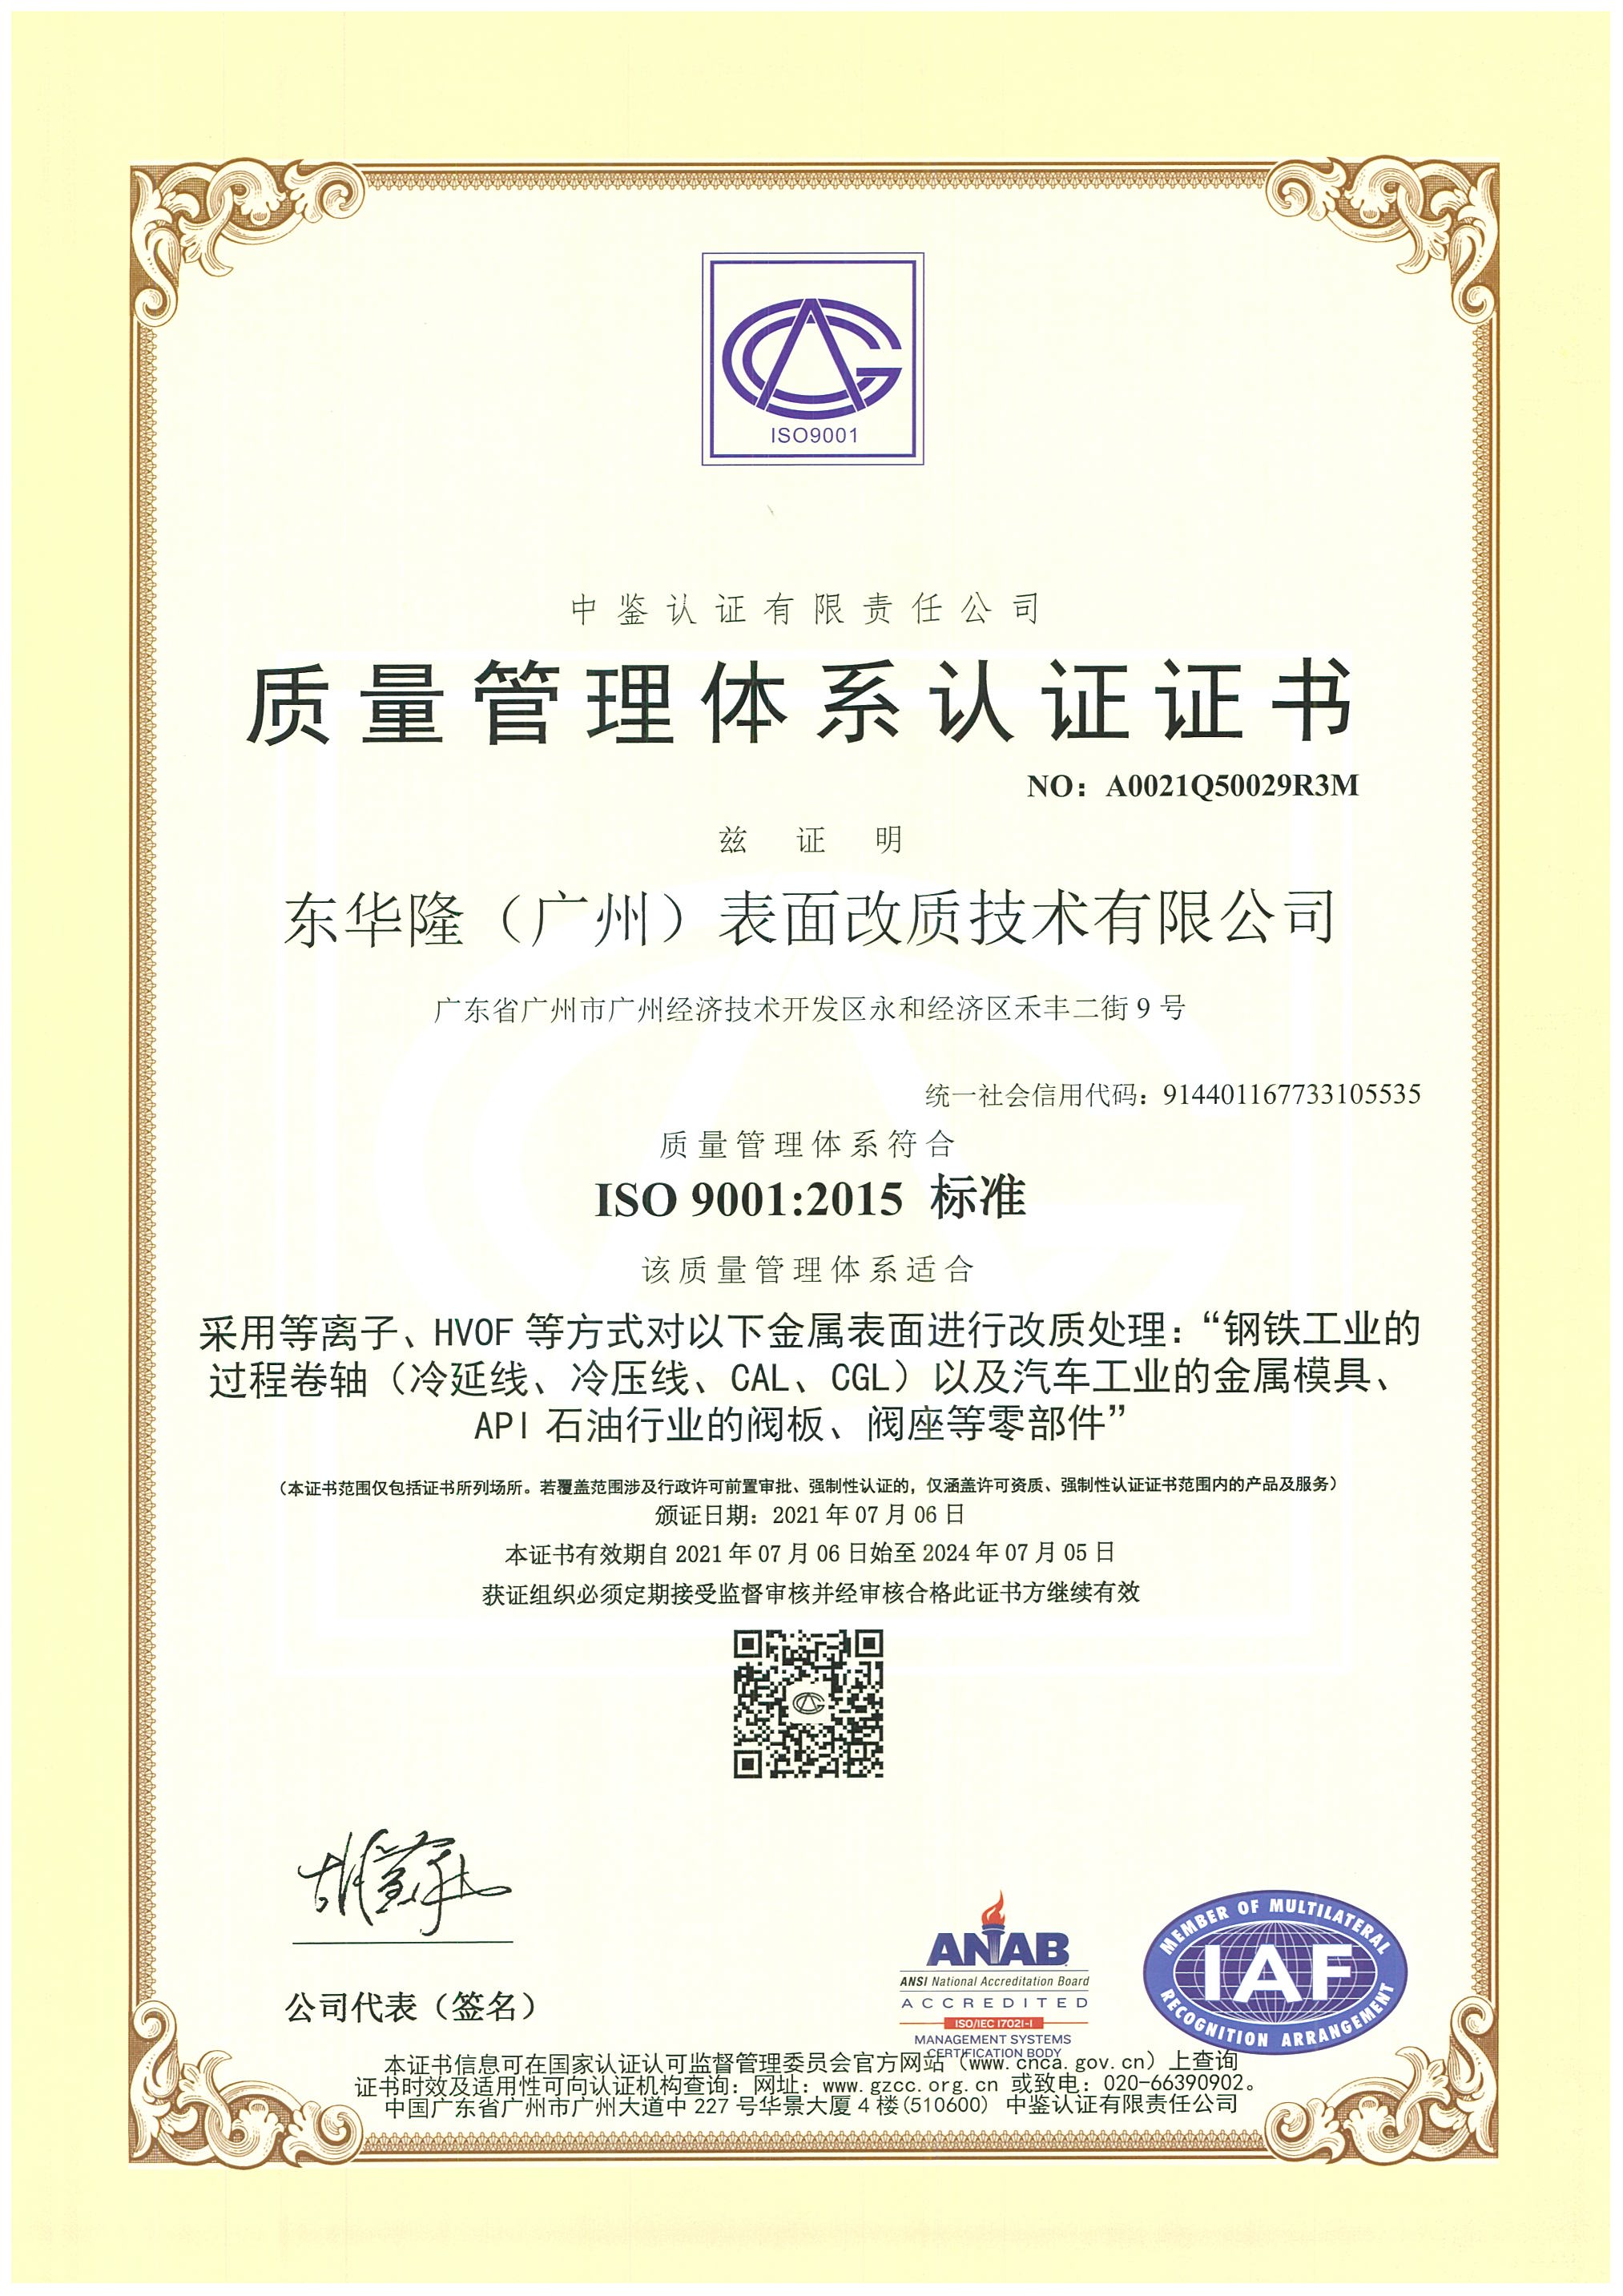 ISO9001ANAB中文版证书.jpg